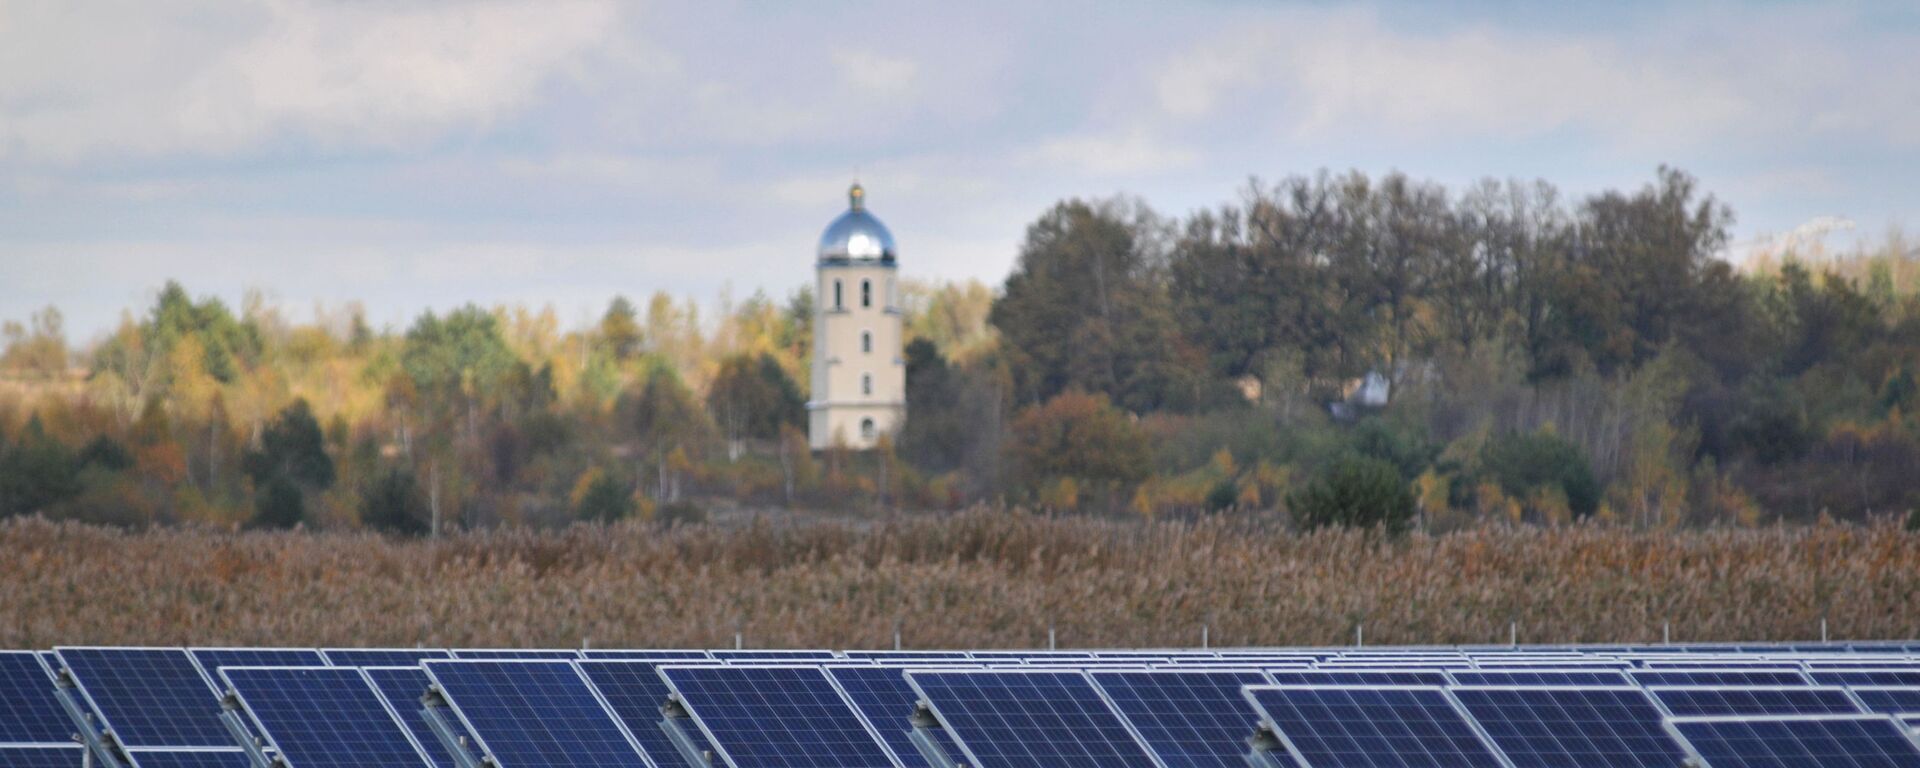 Ветряная и солнечная электростанции во Львовской области - Sputnik Абхазия, 1920, 12.10.2021